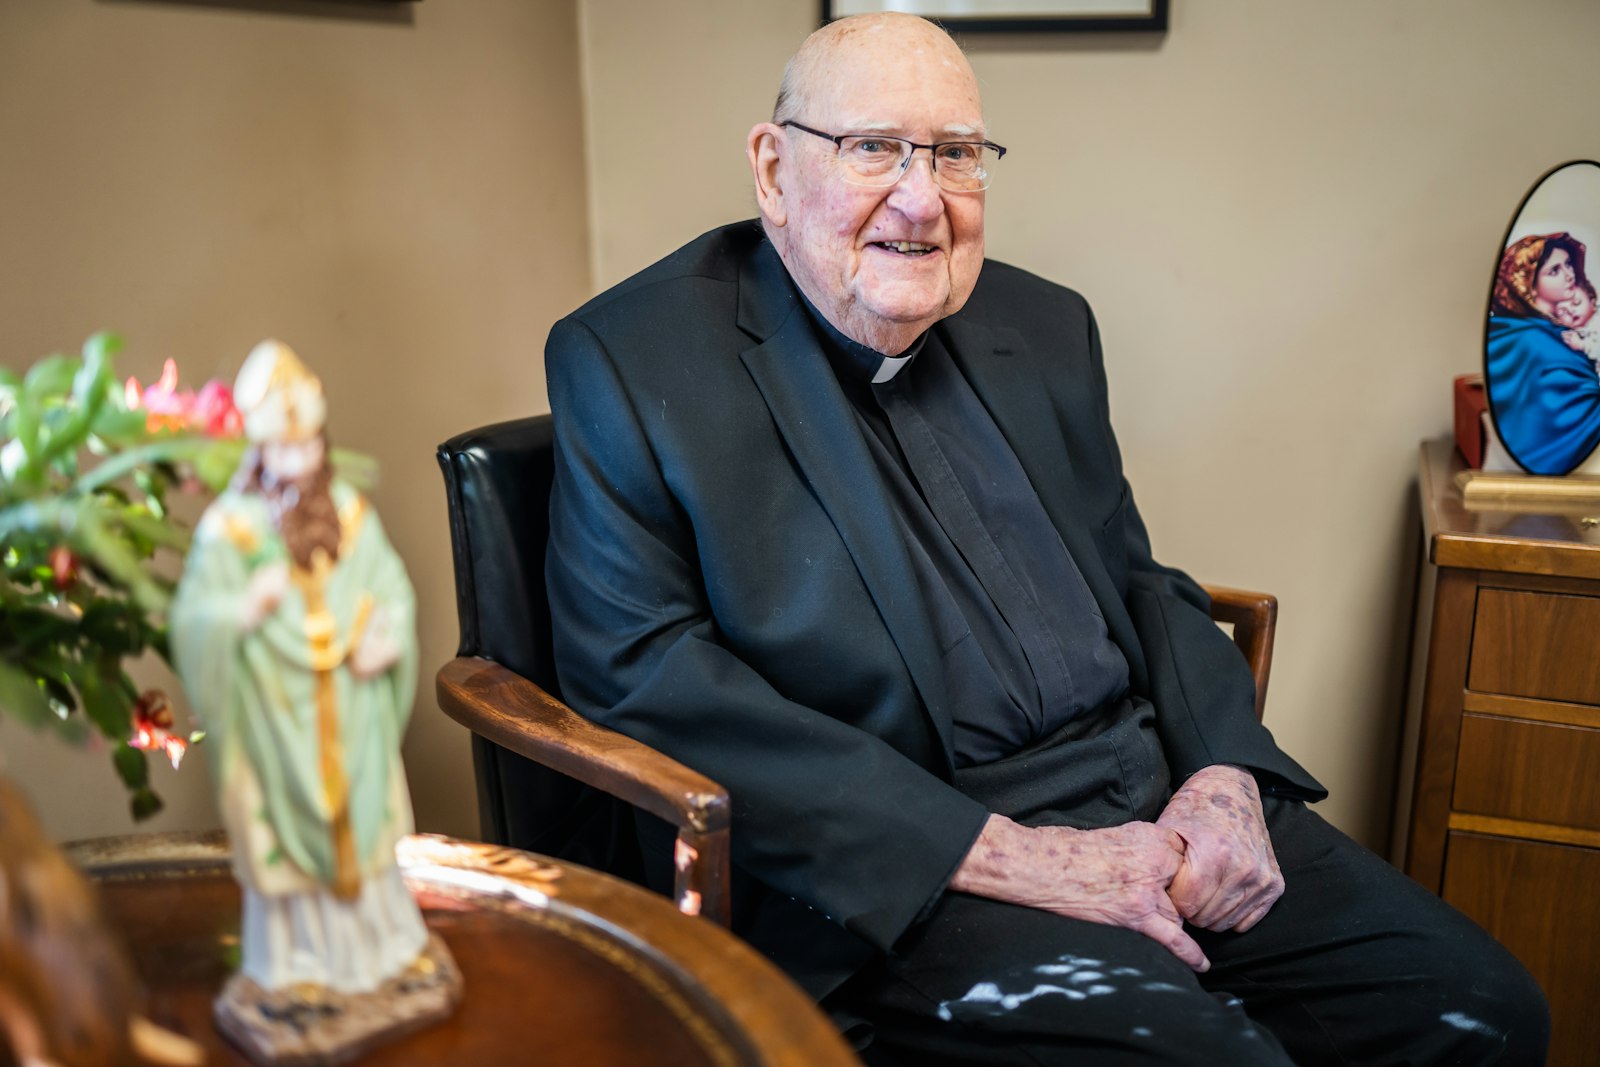 Además de su servicio de muchos años como párroco de la parroquia St. Anselm en Dearborn Heights, Monseñor Moloney, de 92 años, ha dirigido la Sociedad para la Propagación de la Fe de la Arquidiócesis de Detroit durante más de 50 años. Incluso recientemente, sus esfuerzos generaron más para las misiones que cualquier diócesis en los Estados Unidos.